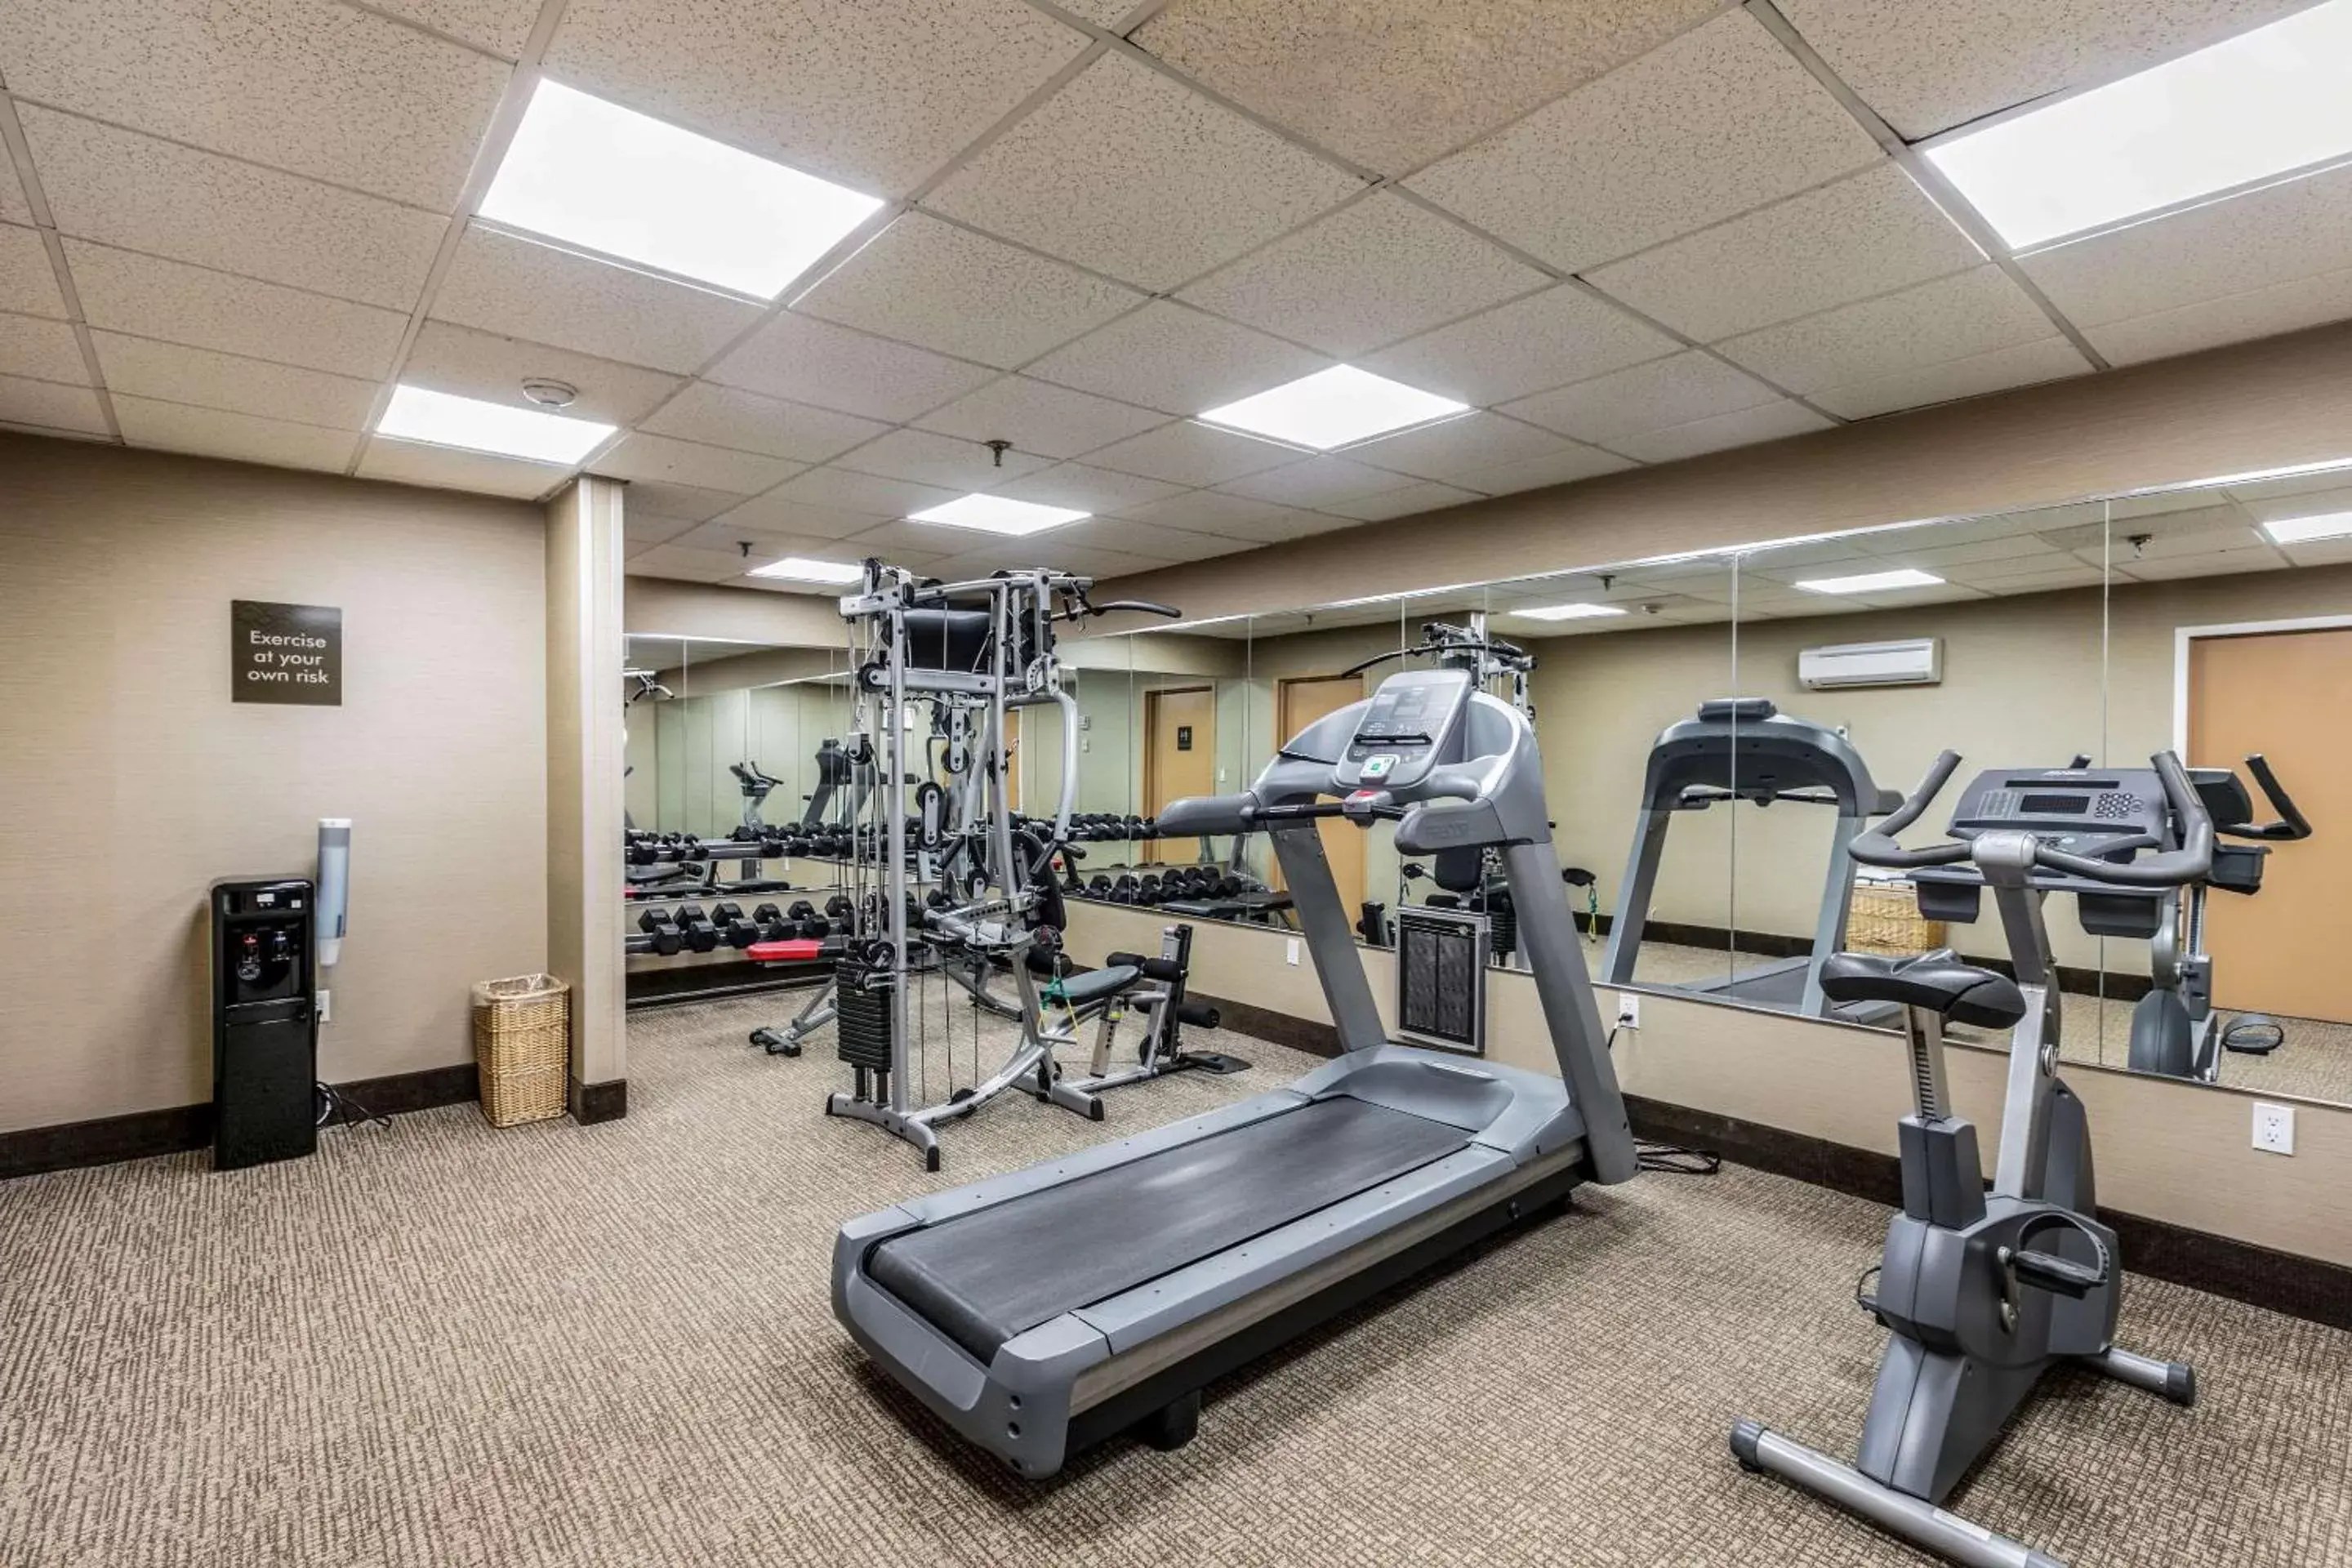 Fitness centre/facilities, Fitness Center/Facilities in Comfort Inn Medford-Long Island